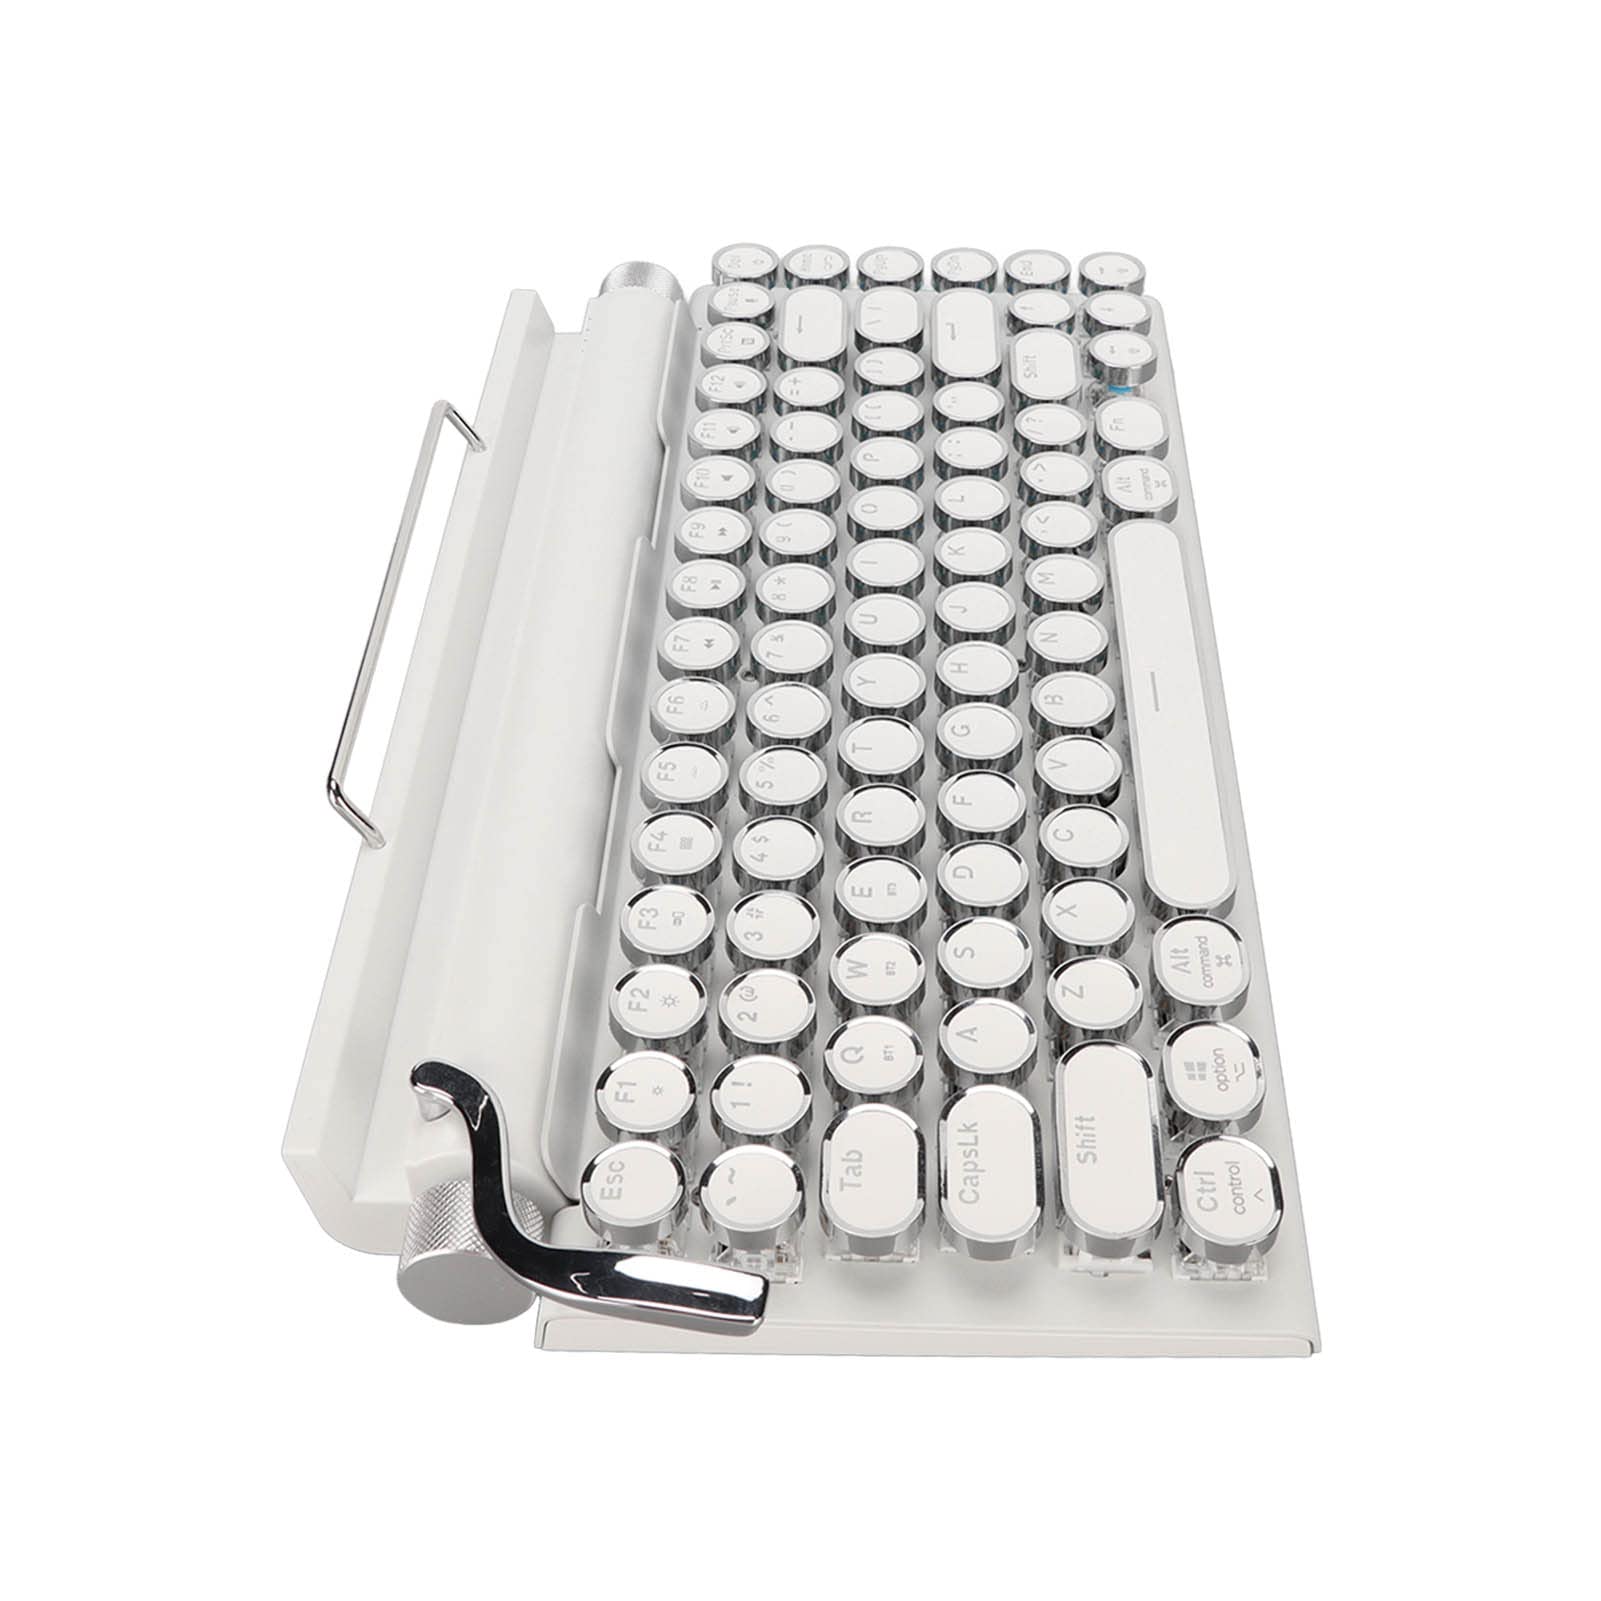 LBEC Mechanische Tastatur, UnterstüTzt 3 GeräTe FN Master 5.0 Schreibmaschine Mechanische Tastatur 2000mA KapazitäT Retro Runde Tastenkappe FüR Tablet (Weiß)